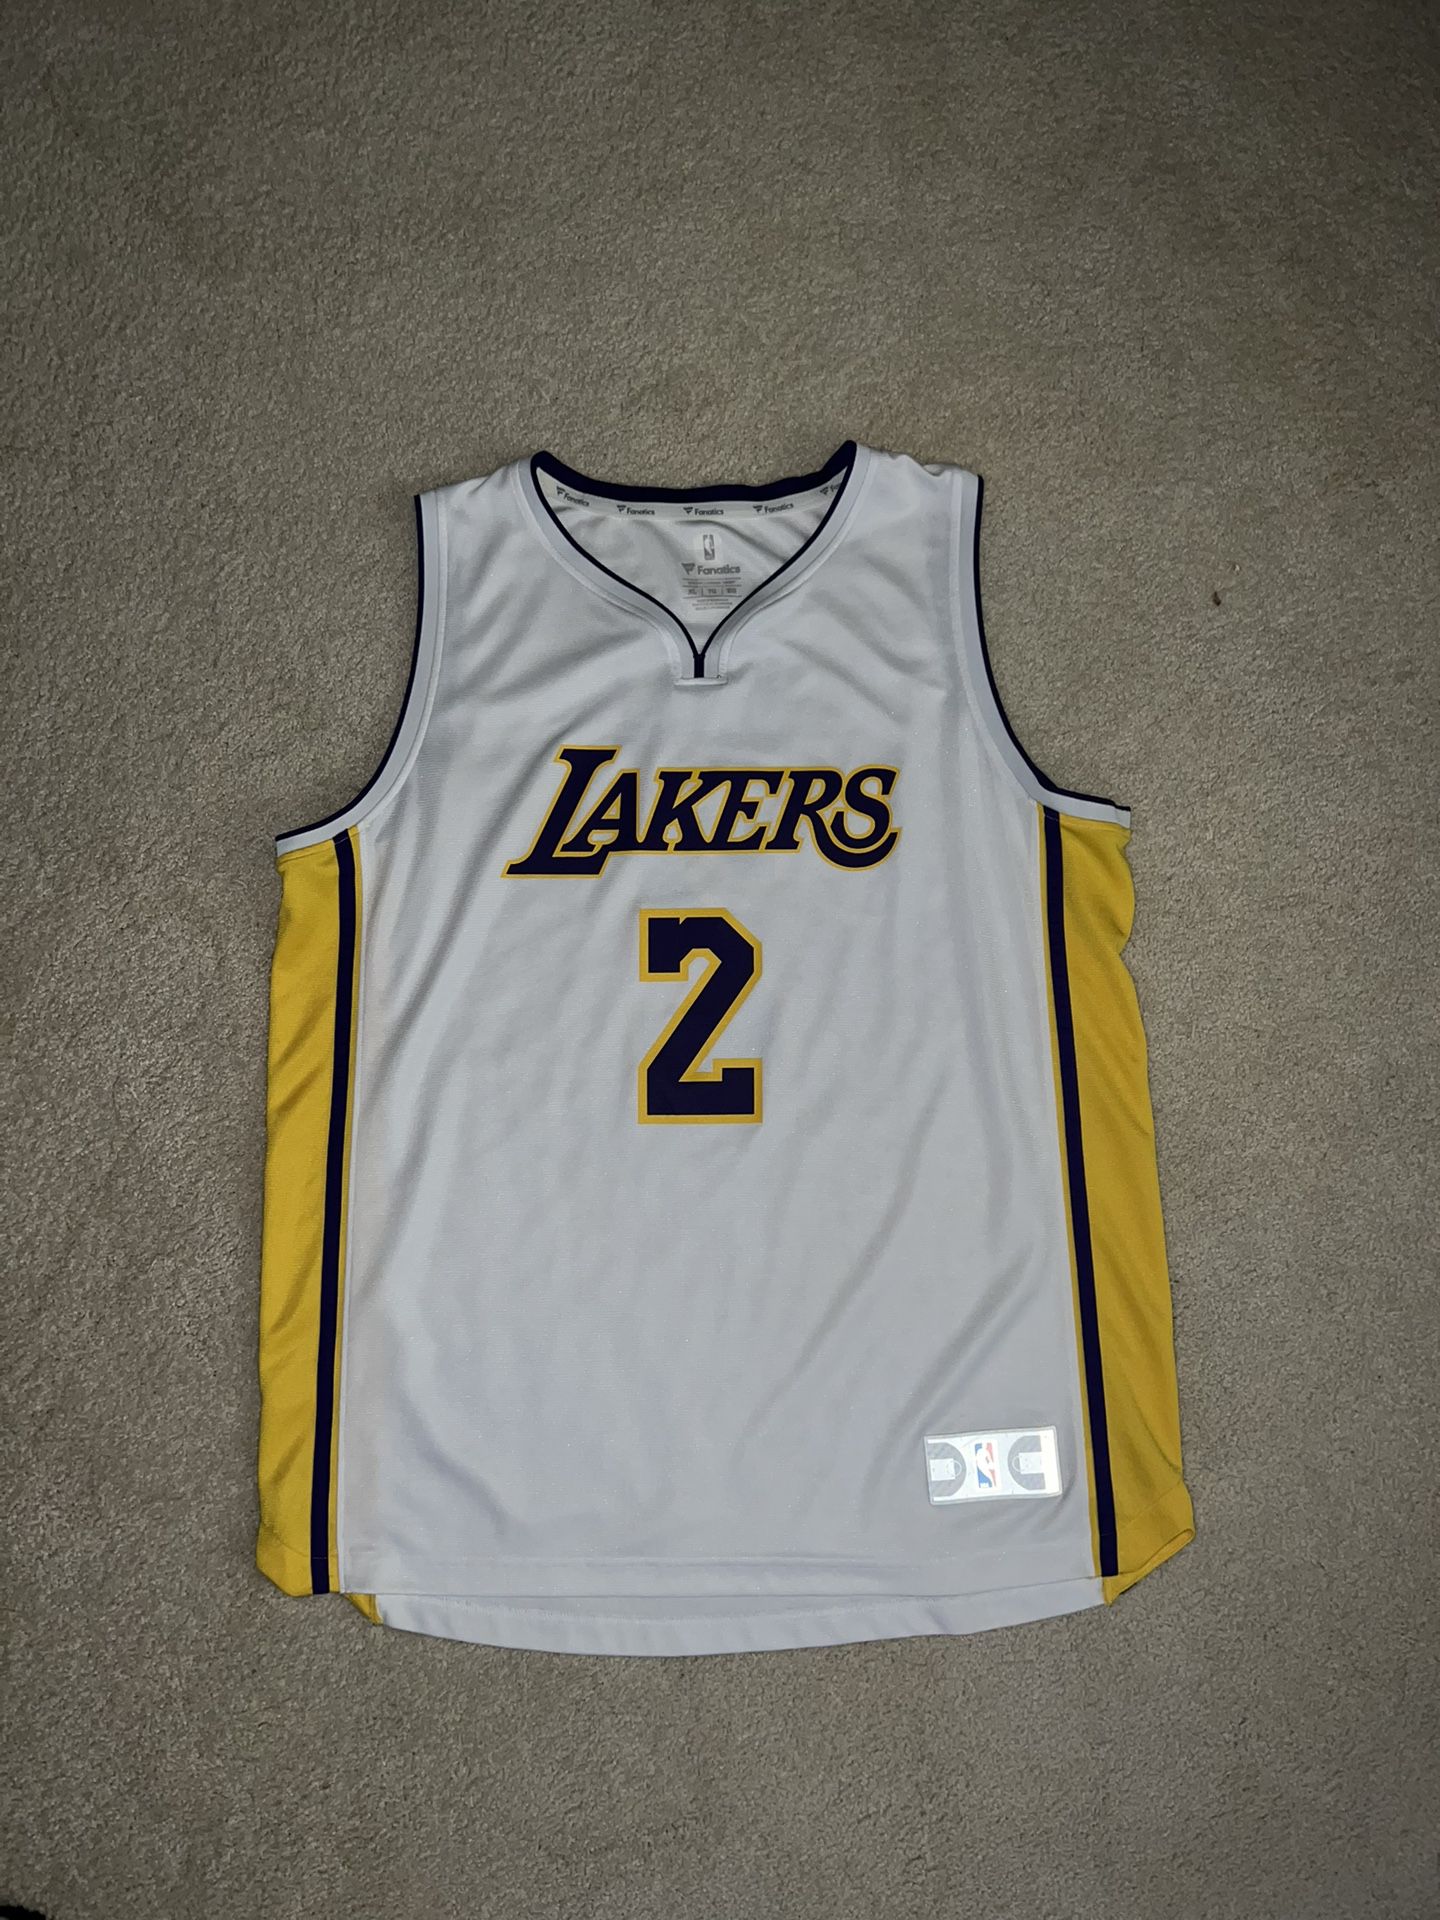 Lonzo Ball Lakers Jersey